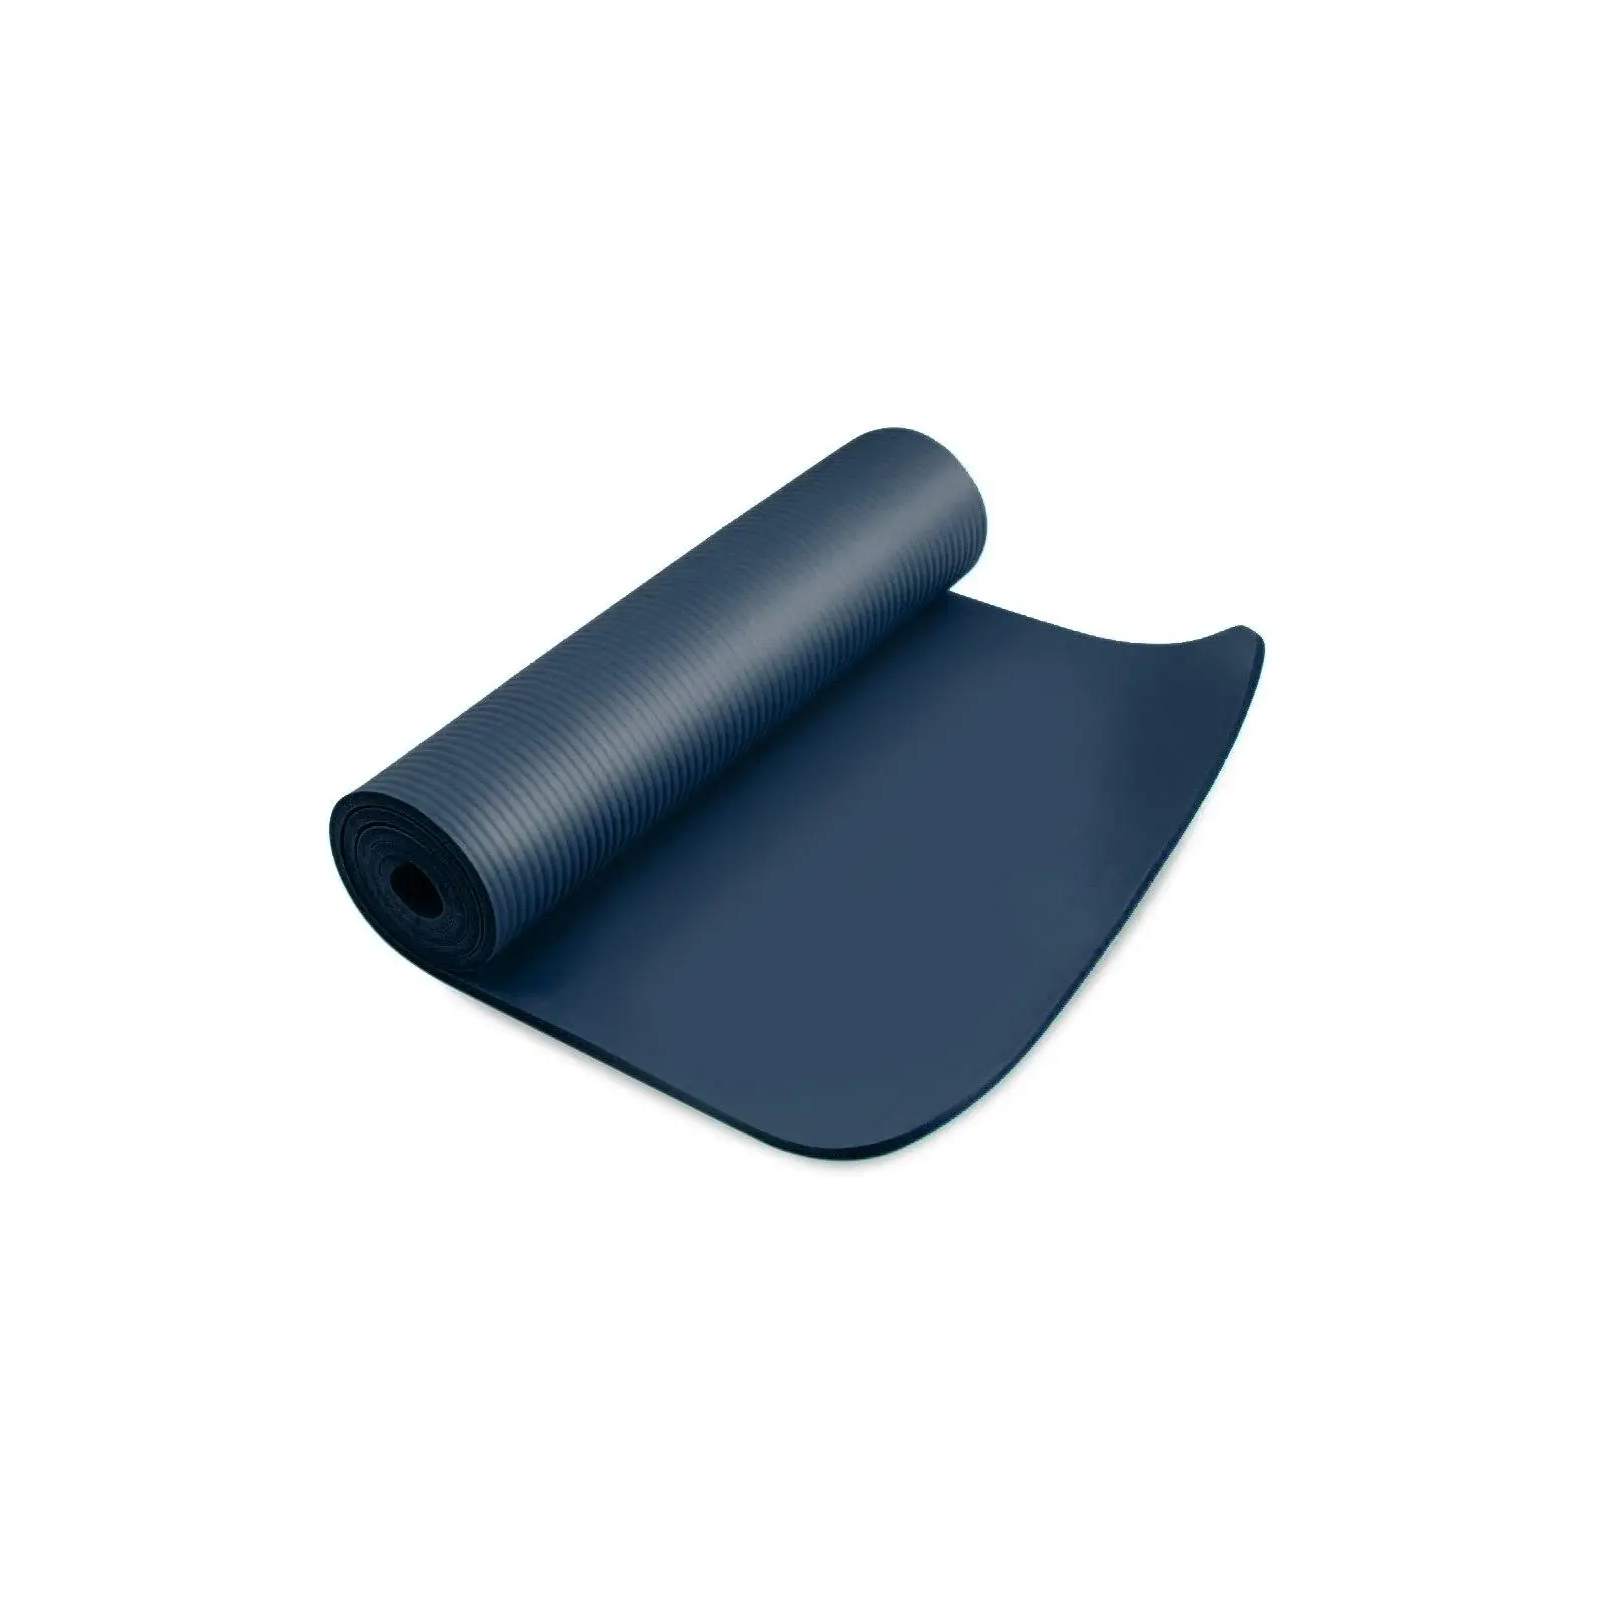 Килимок для йоги PowerPlay 4151 NBR Performance Mat 183 x 61 x 1.2 см Синій (PP_4151_Blue_1.2cm) зображення 4